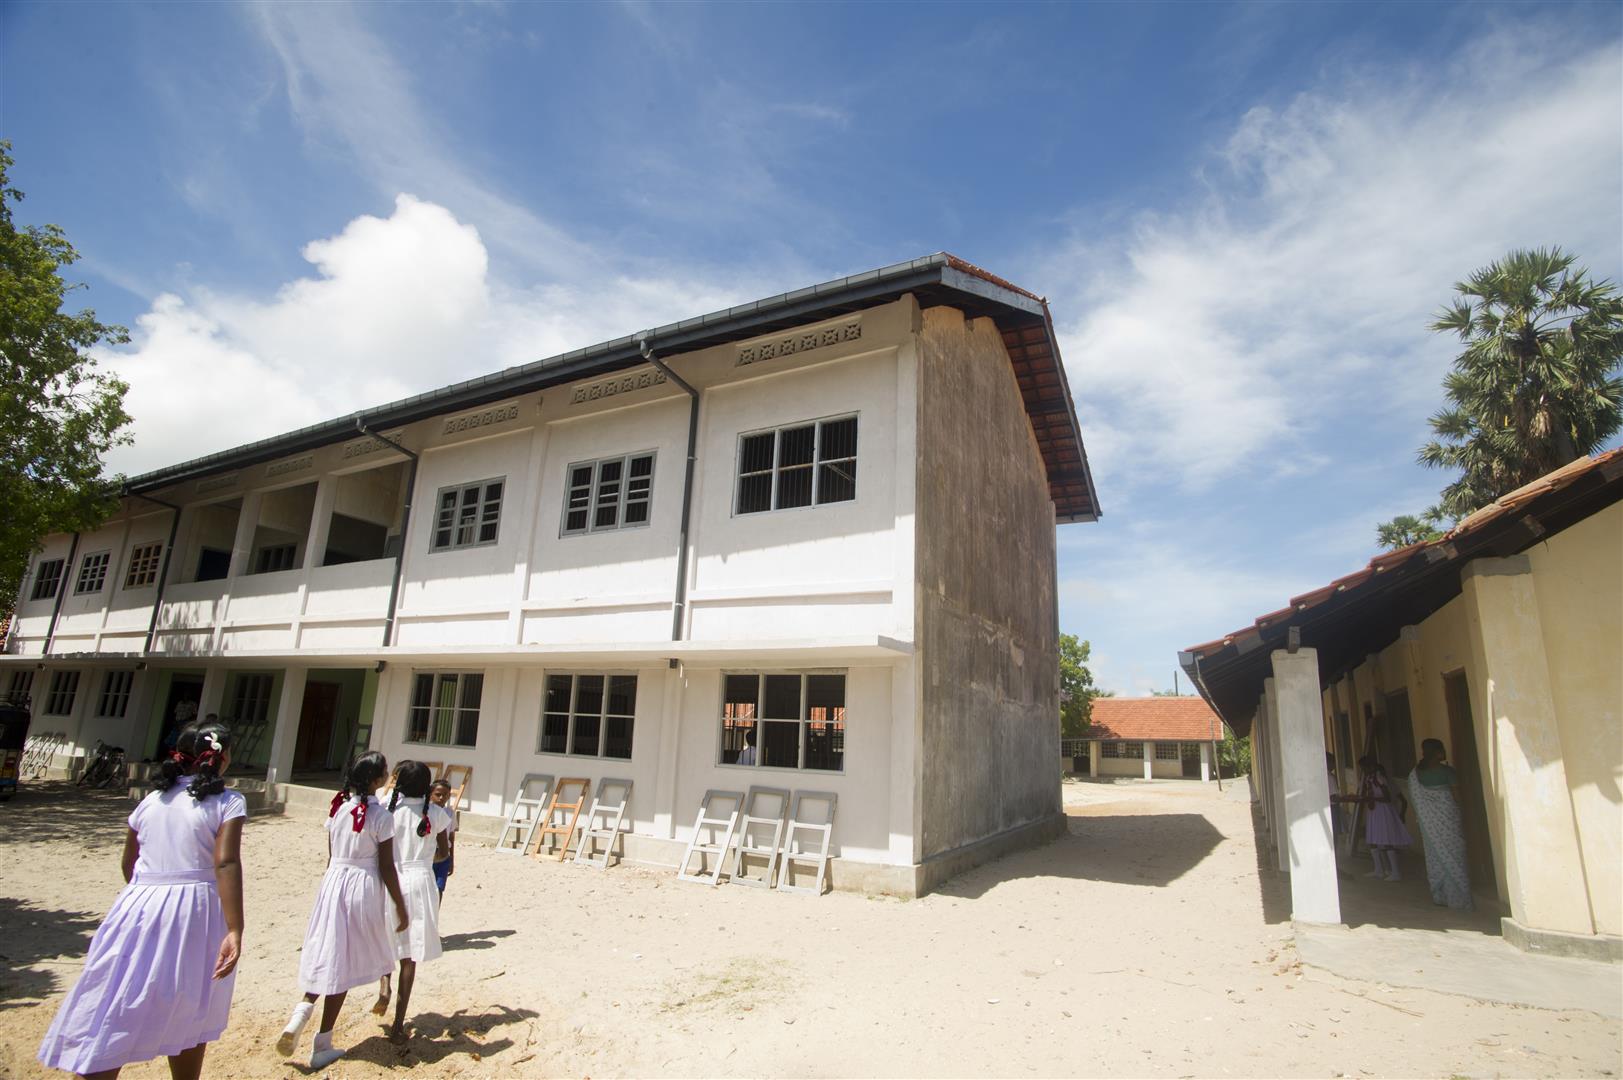 Tre scolare camminano verso la loro scuola, costruita su due piani.